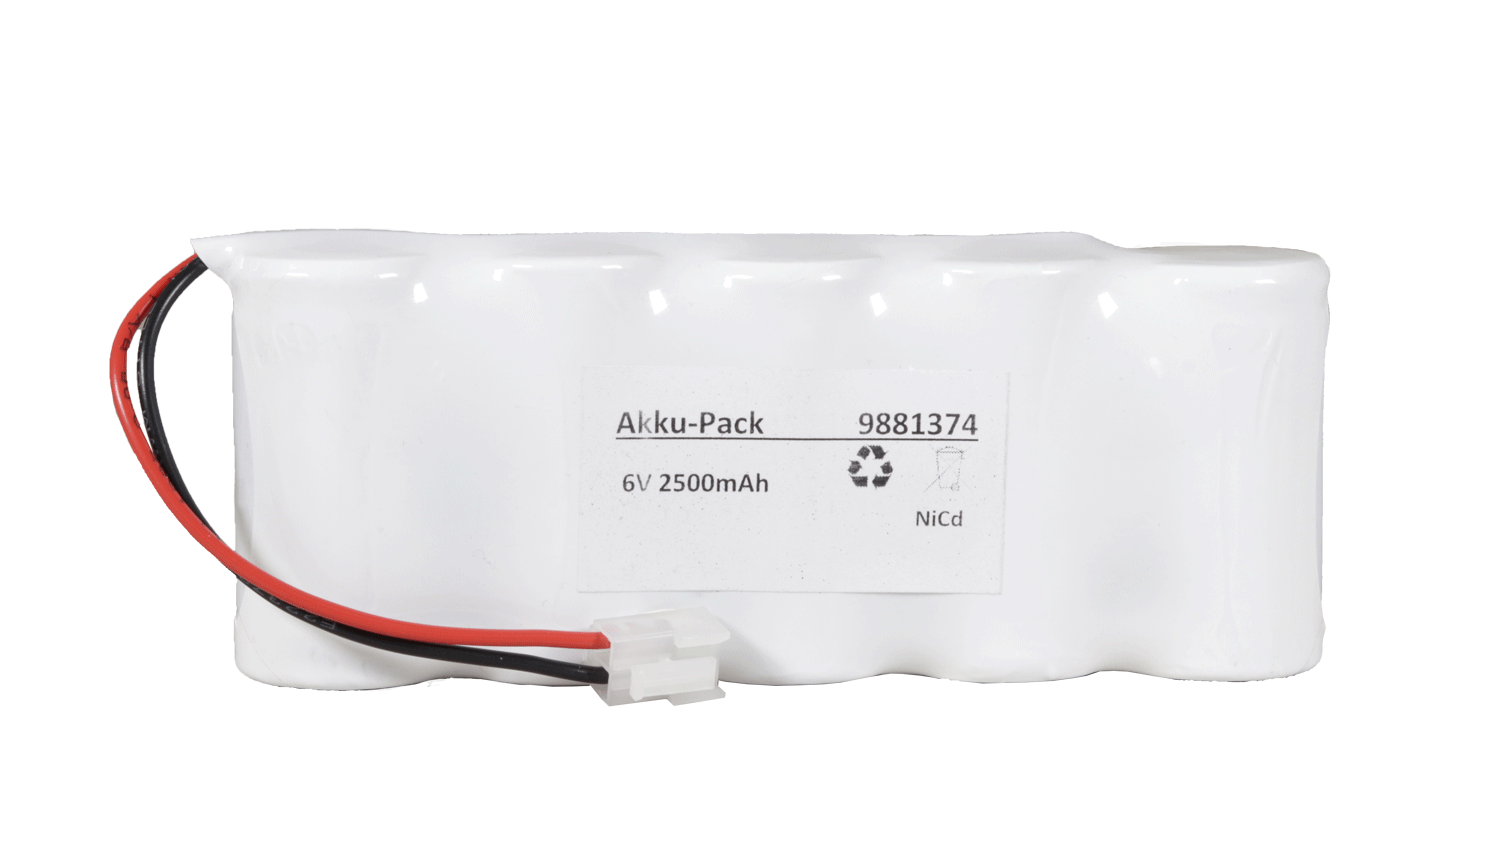 Akku Pack 6V 2500mAh für Notbeleuchtung Reihe NiCd F5x1 mit Kabel + und Stecker JST-VHR2  